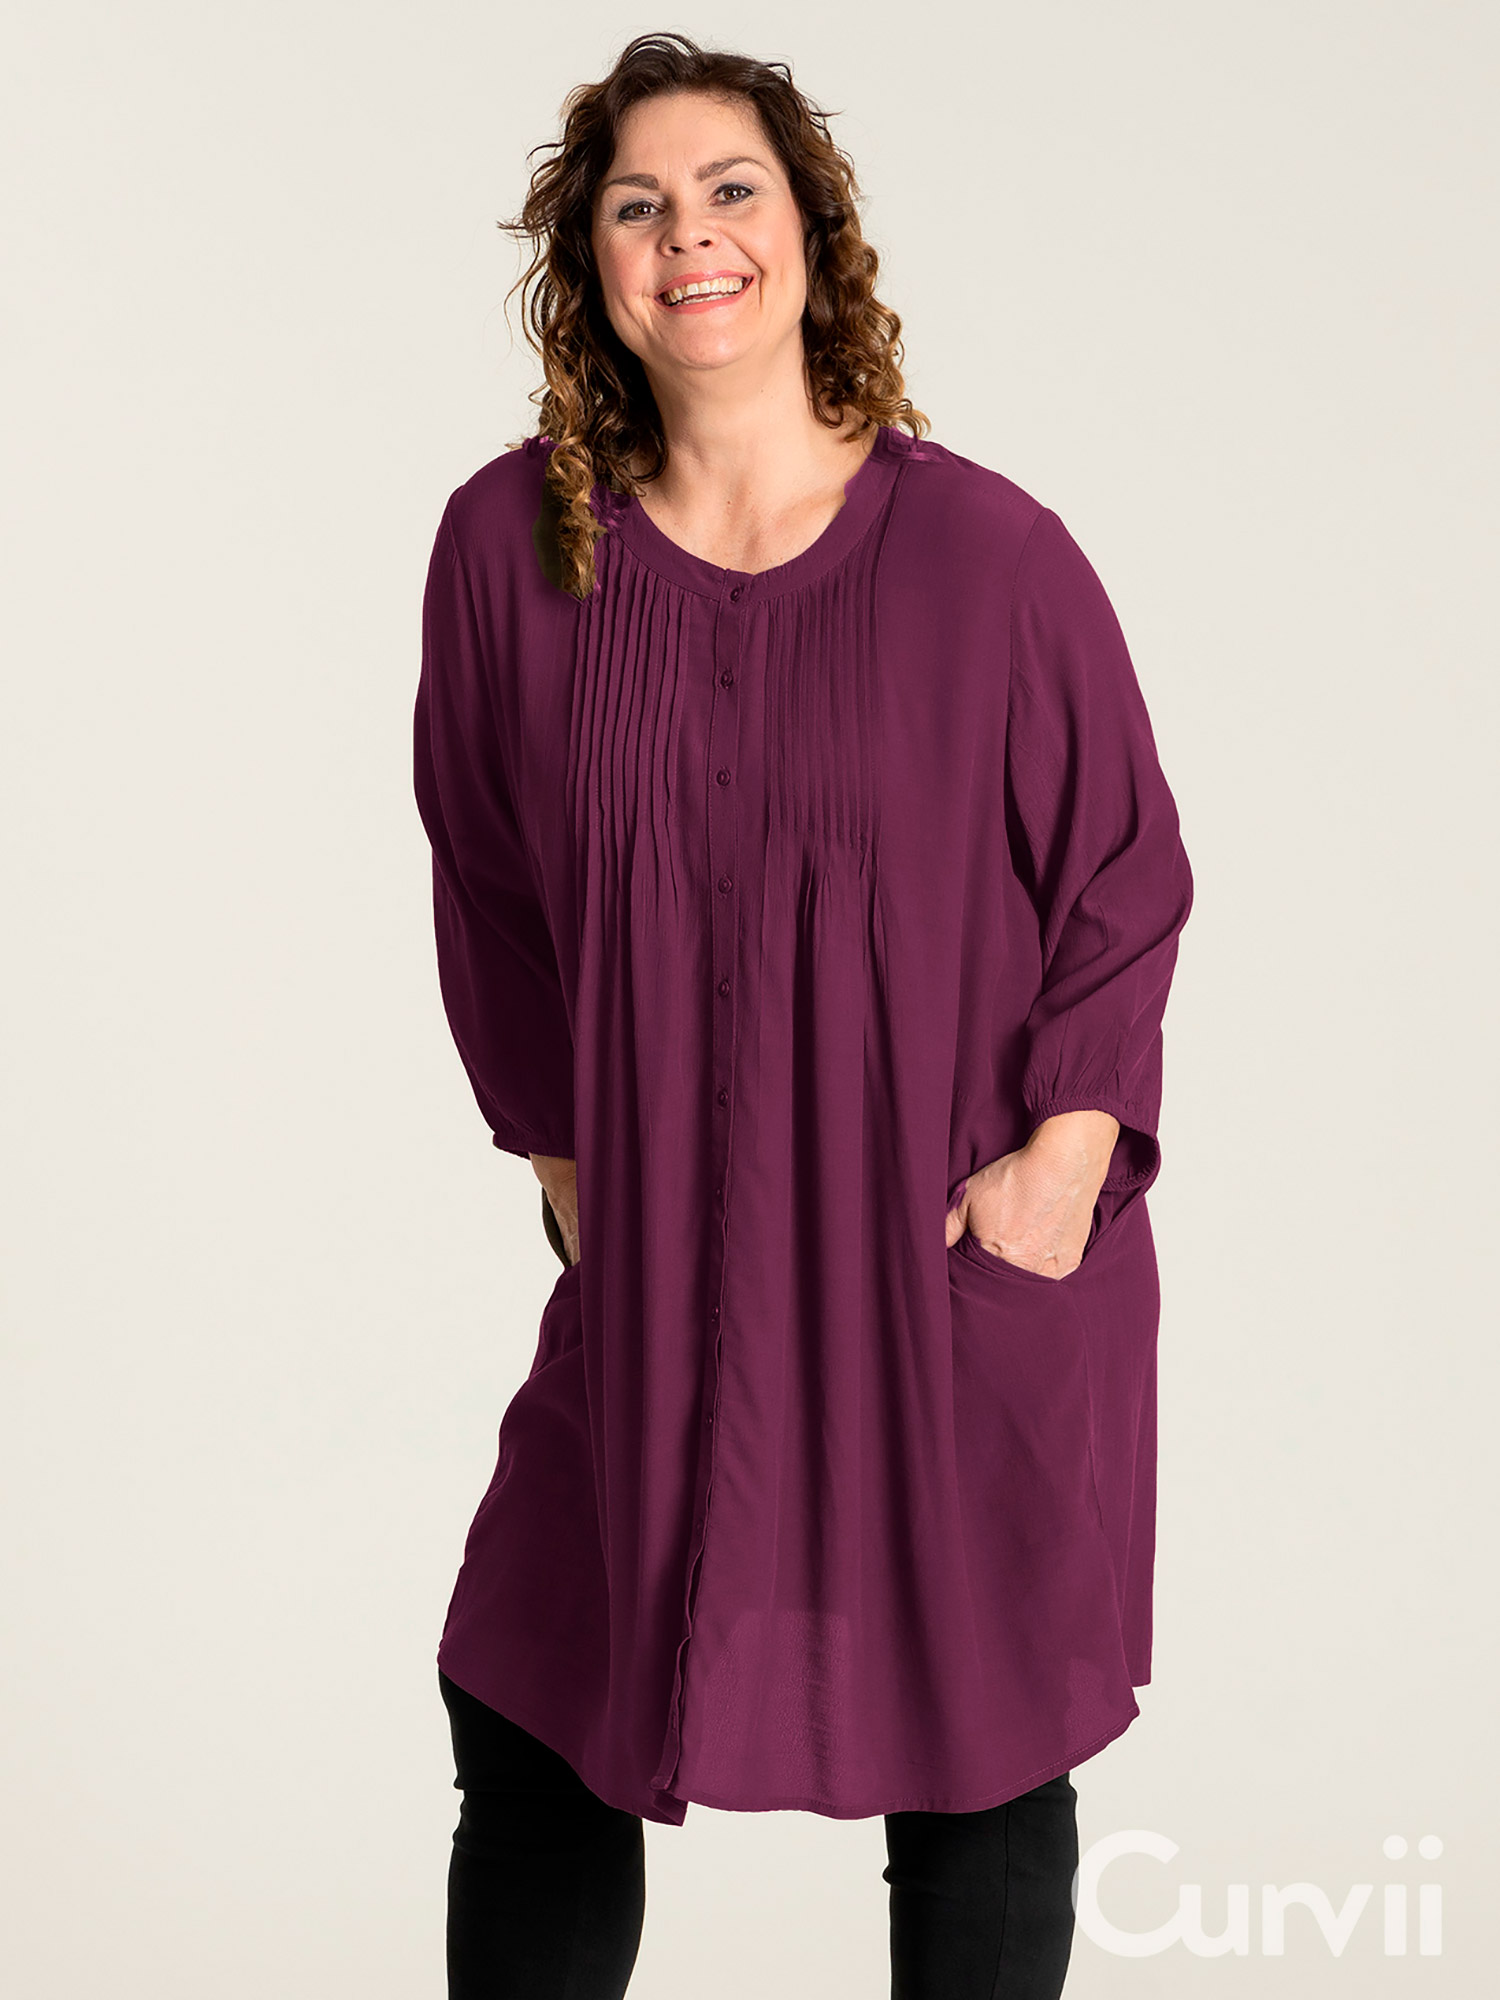 JOHANNE - Flott skjortetunika i mørk lilla med lommer fra Gozzip